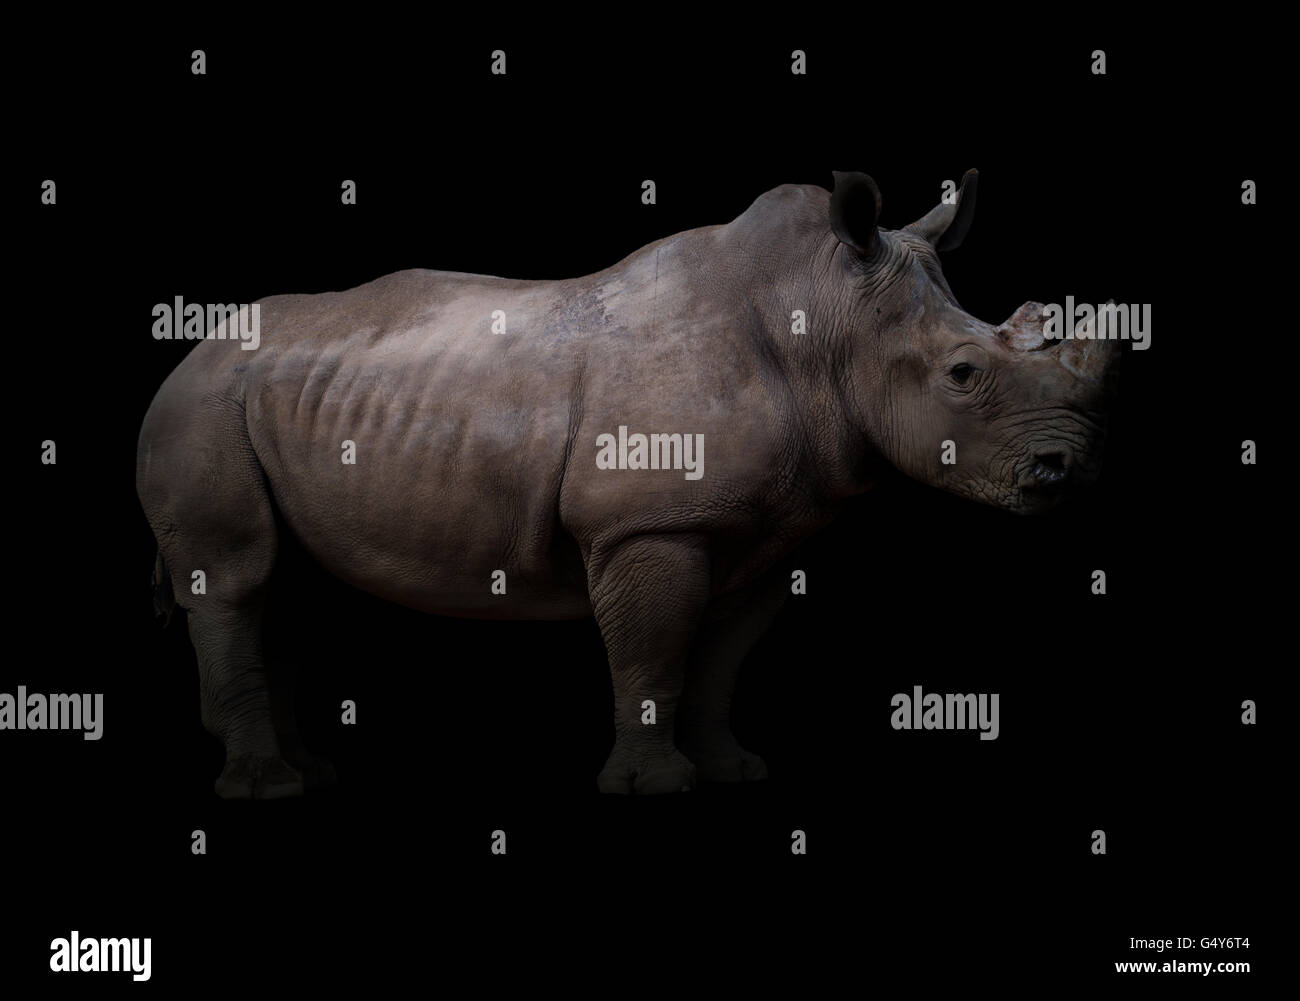 El rinoceronte blanco, cuadrado con labio de rinoceronte en fondo oscuro Foto de stock